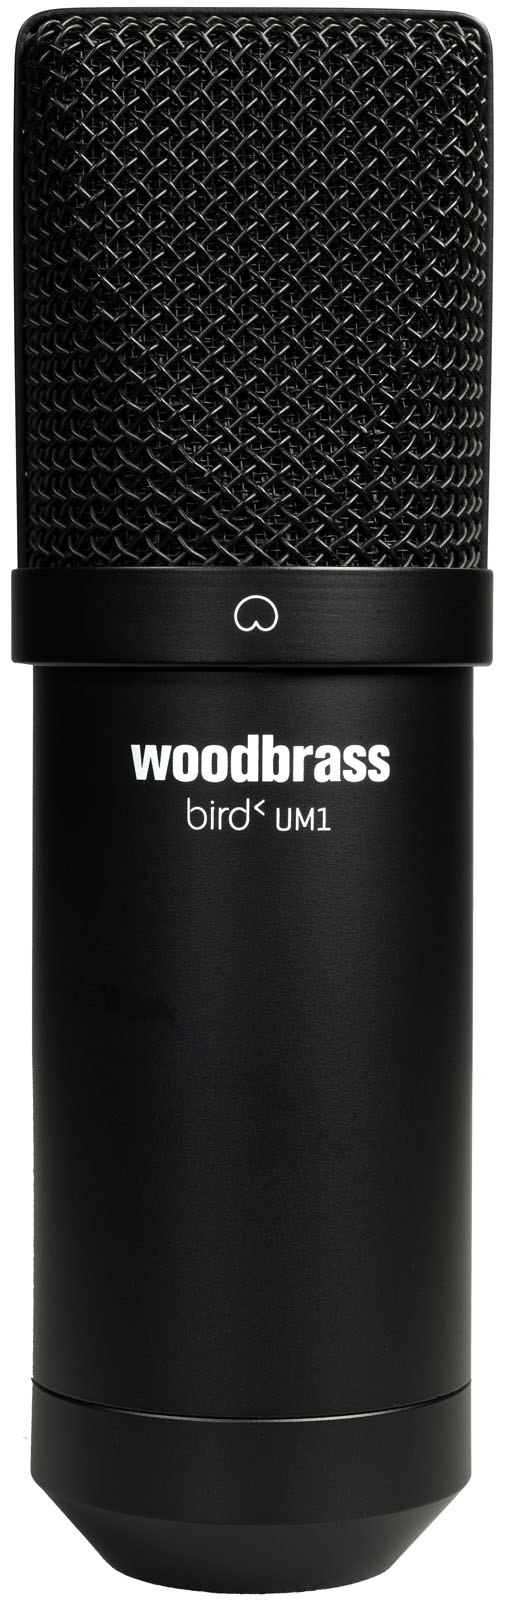 WOODBRASS BIRD UM1